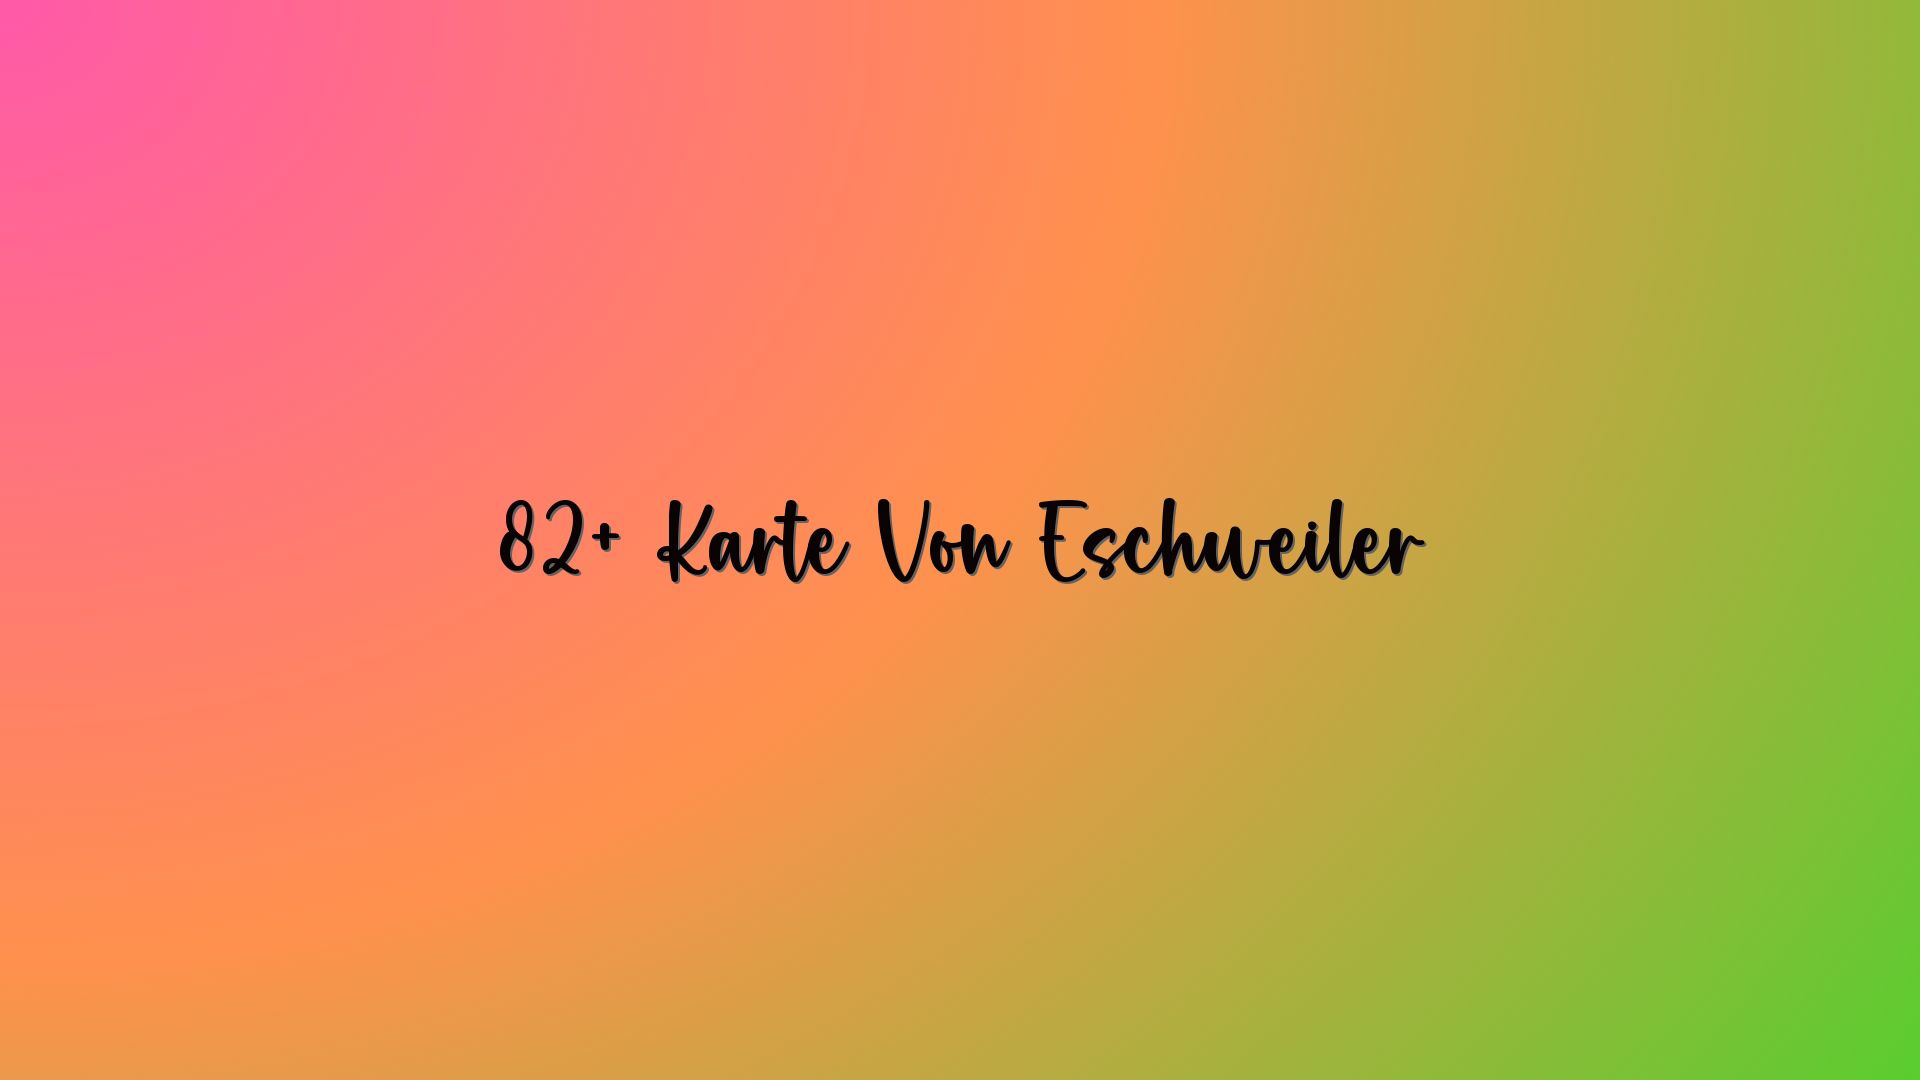 82+ Karte Von Eschweiler